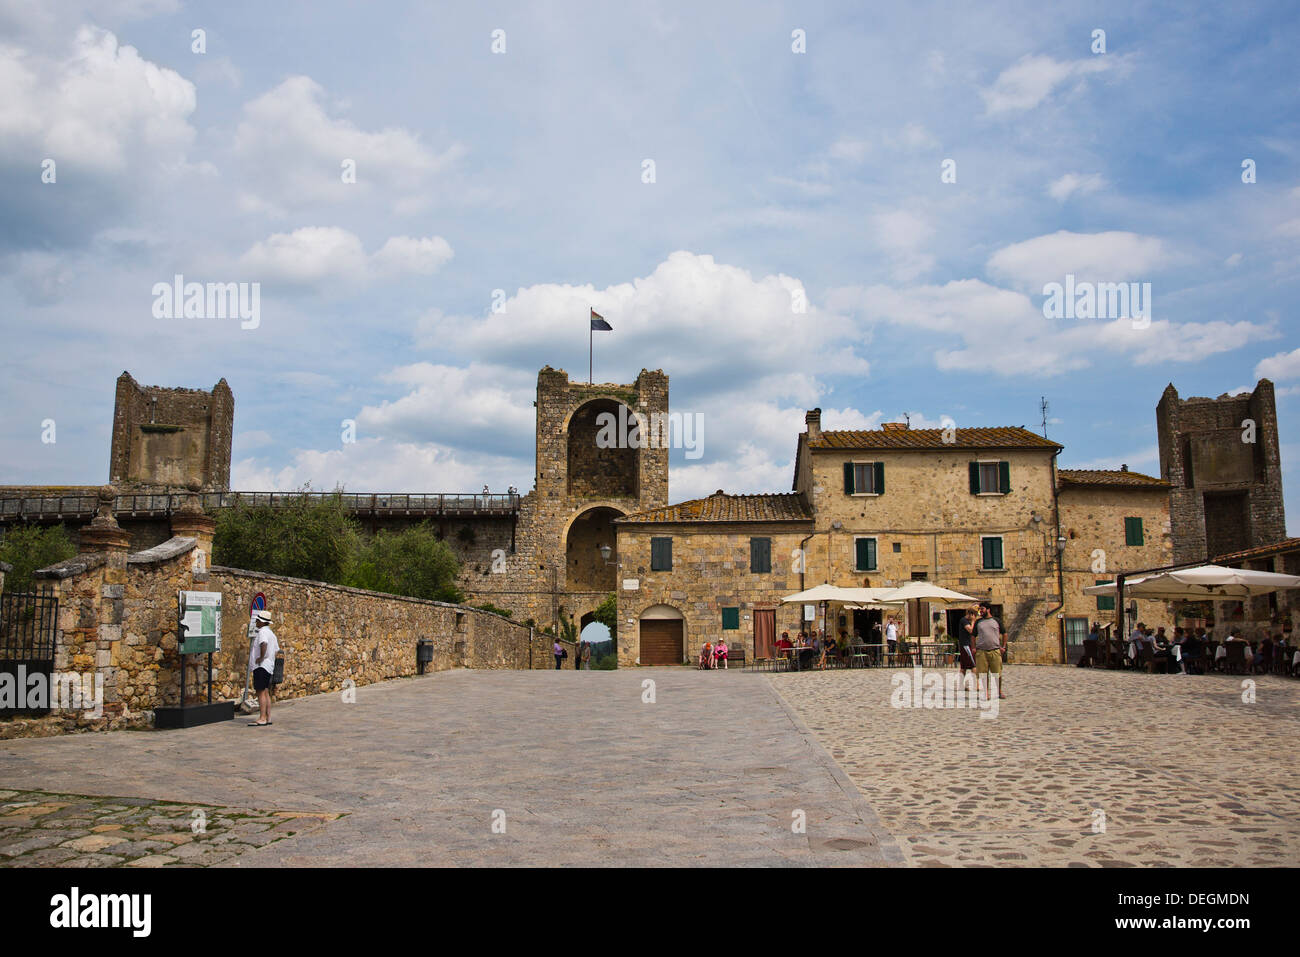 Des terrasses de cafés dans une ville, Monteriggioni, Province de Sienne, Toscane, Italie Banque D'Images